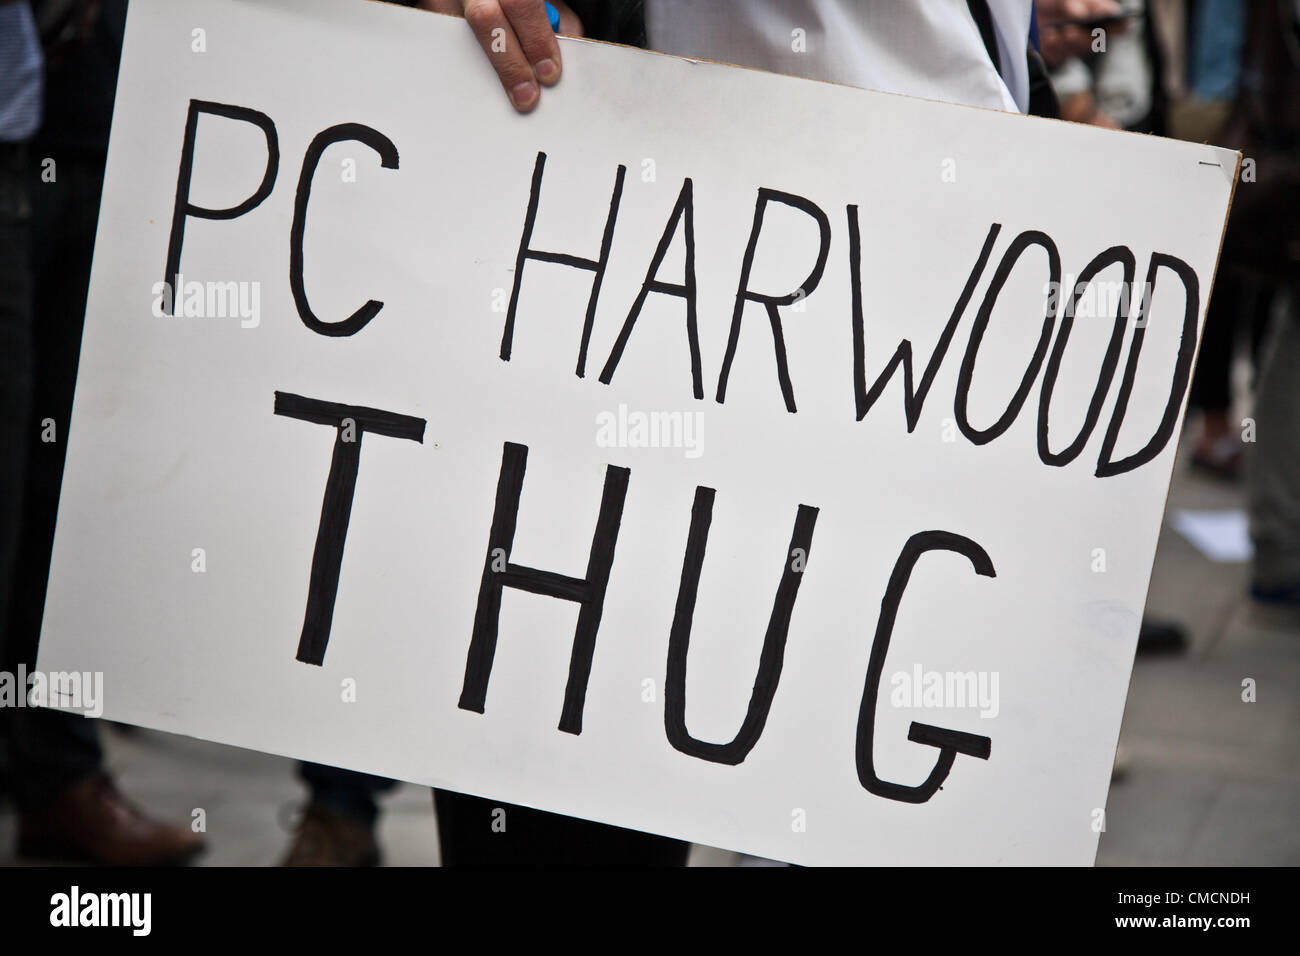 London, UK. 19. Juli 2012 Schild mit der Aufschrift "PC Harwood Thug" Besitz eines Demonstranten, die außen Scotland Yard in Westminster versammelt hatten. Demonstranten versammelten sich dort um eine Demonstration gegen PC Simon Harwood halten Freispruch in Ian Tomlinson Studie. Stockfoto